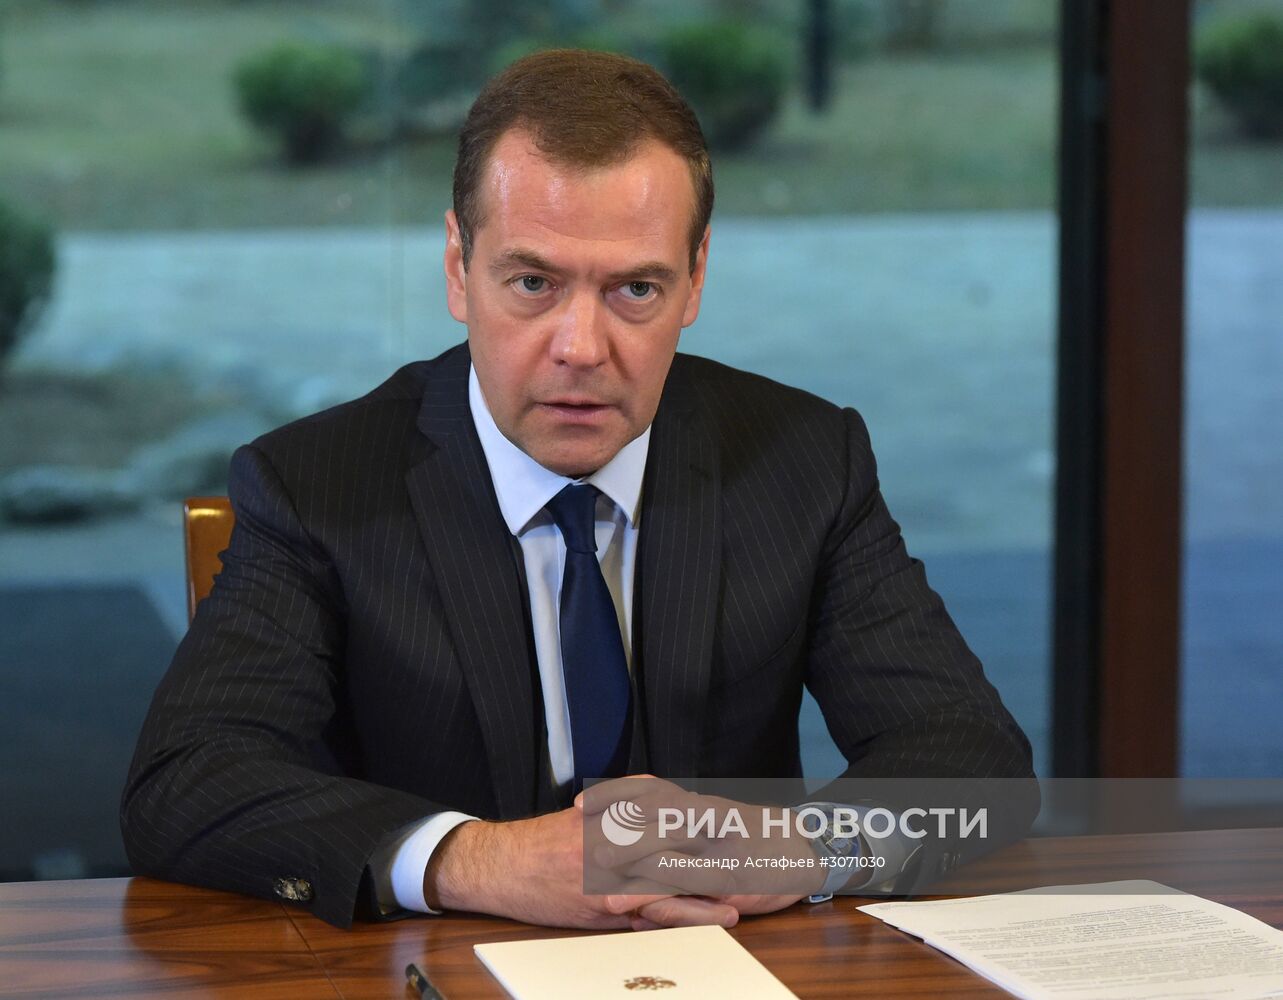 Встреча премьер-министра РФ Д. Медведева с руководством фракции "Единая Россия" в Госдуме РФ